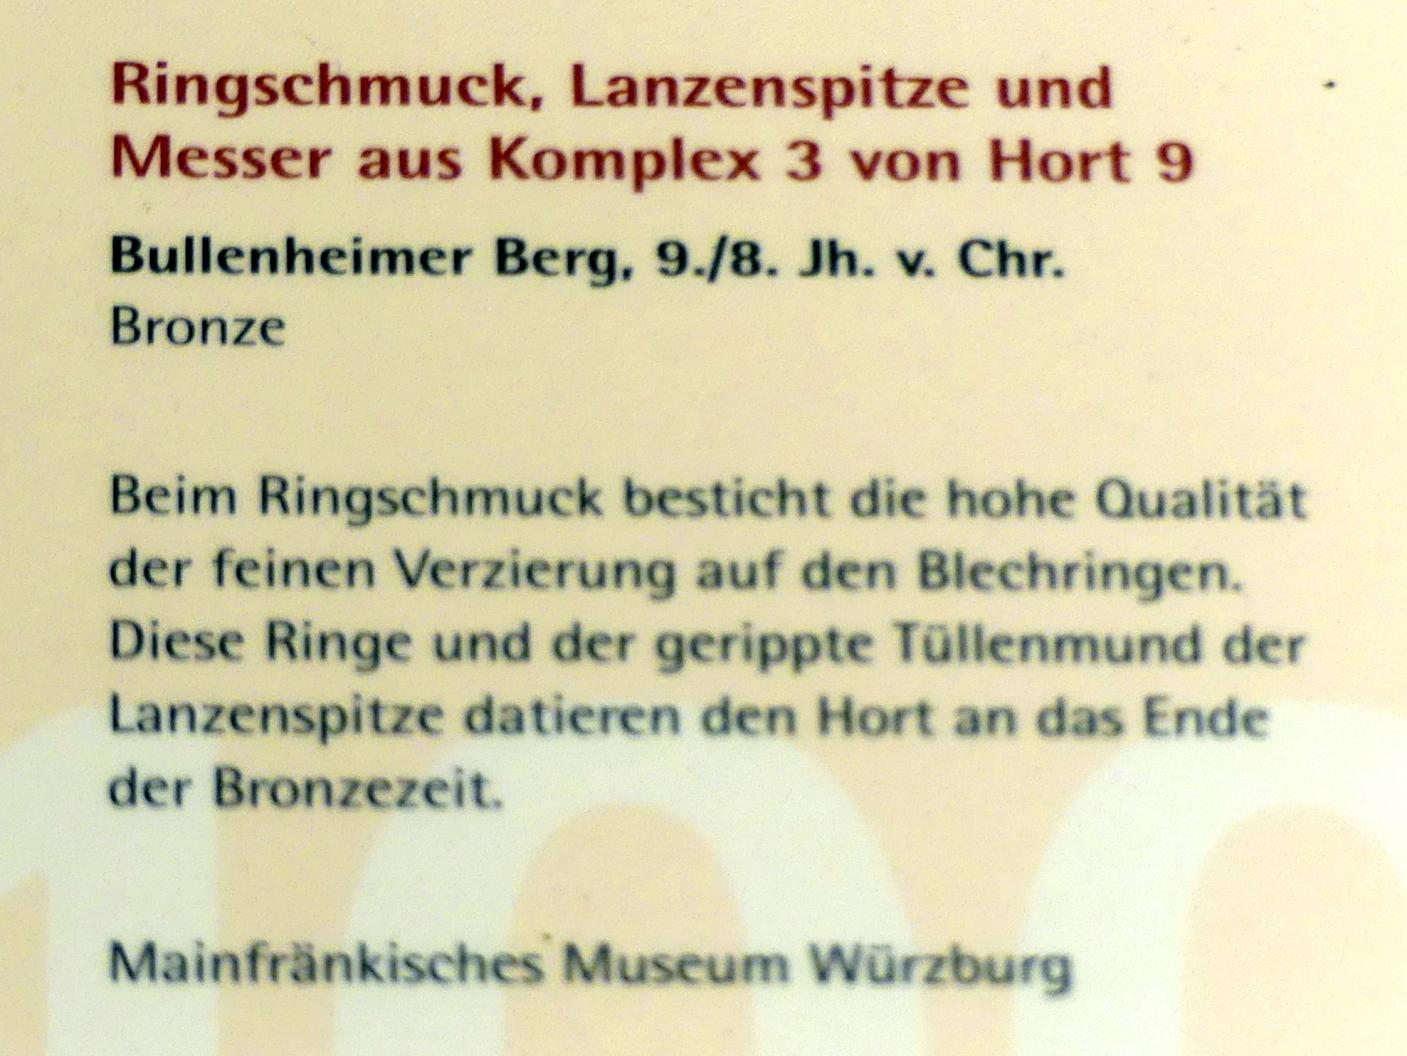 Ringschmuck, Urnenfelderzeit, 1400 - 700 v. Chr., 900 - 700 v. Chr., Bild 2/2